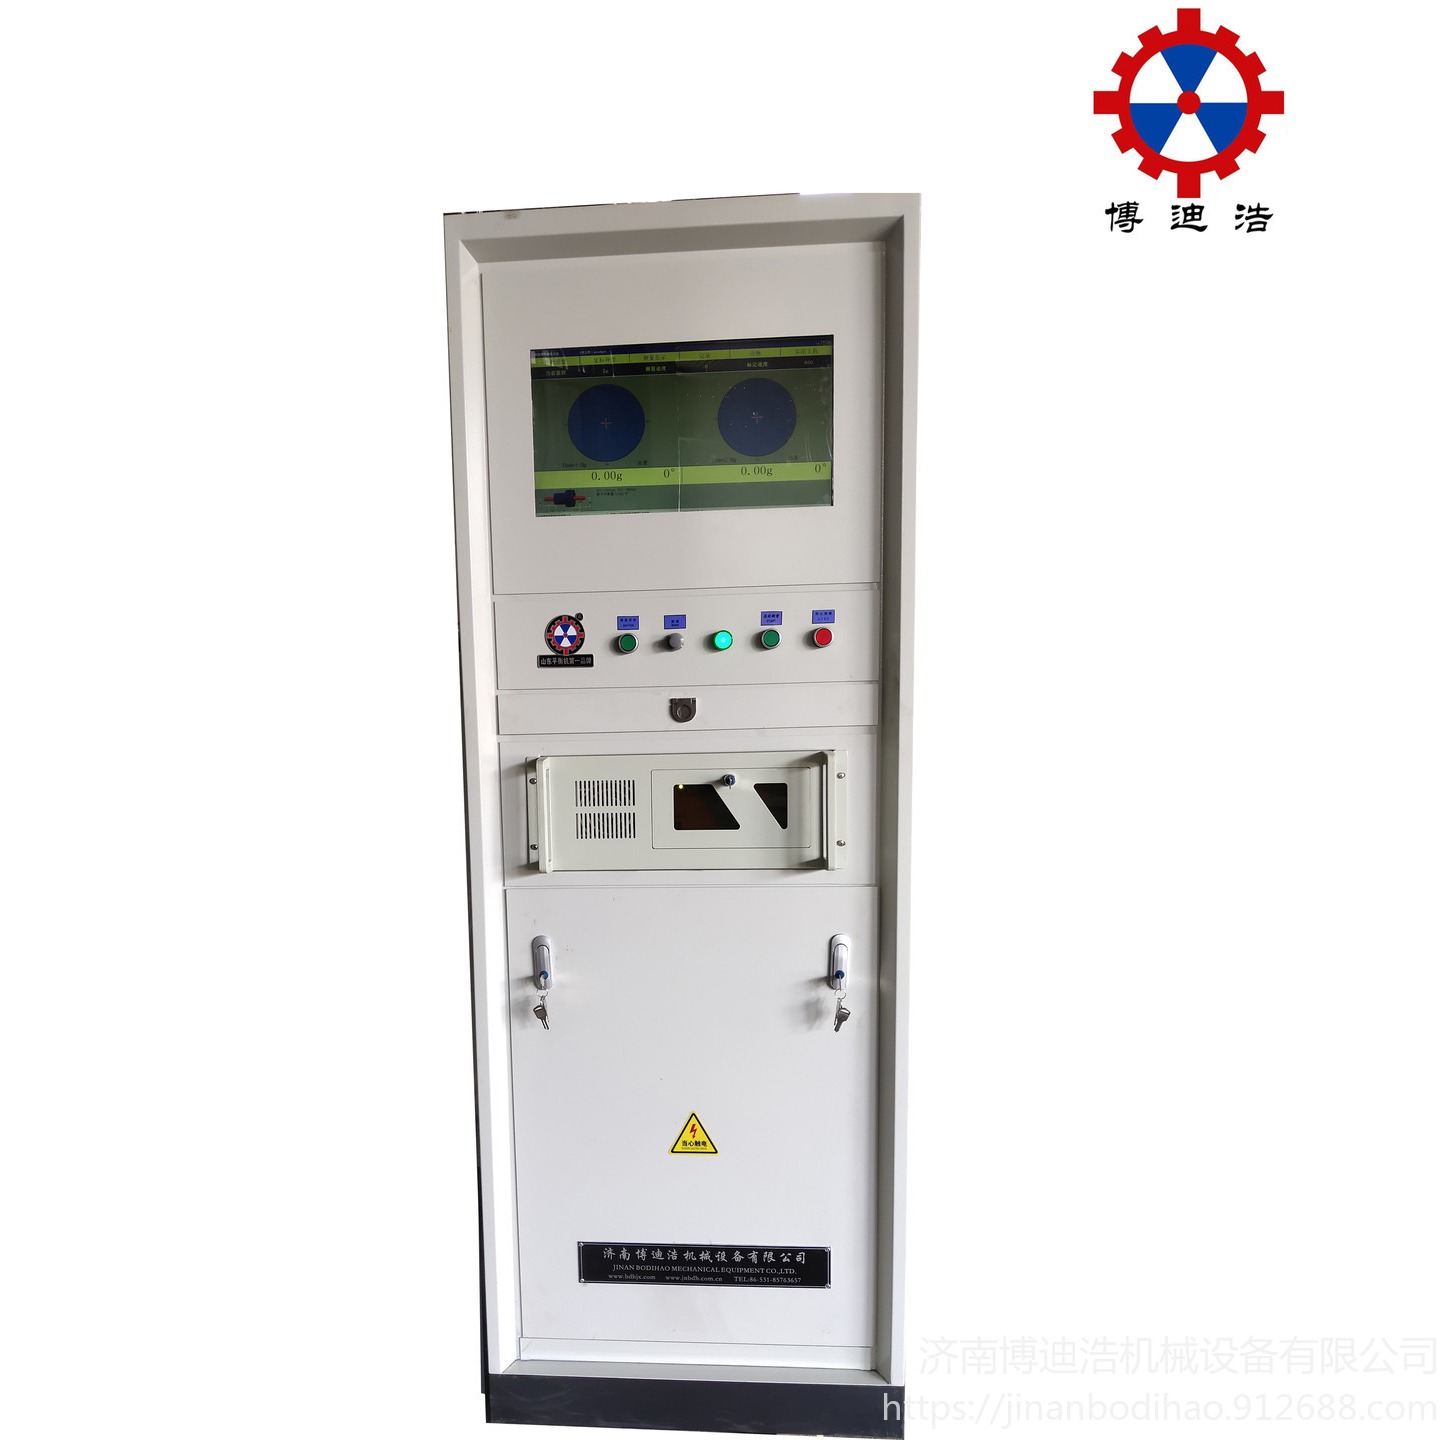 广州二手平衡机更换测量系统平衡机测量系统改造升级 博迪浩供应全自动平衡机测量系统GB-2000